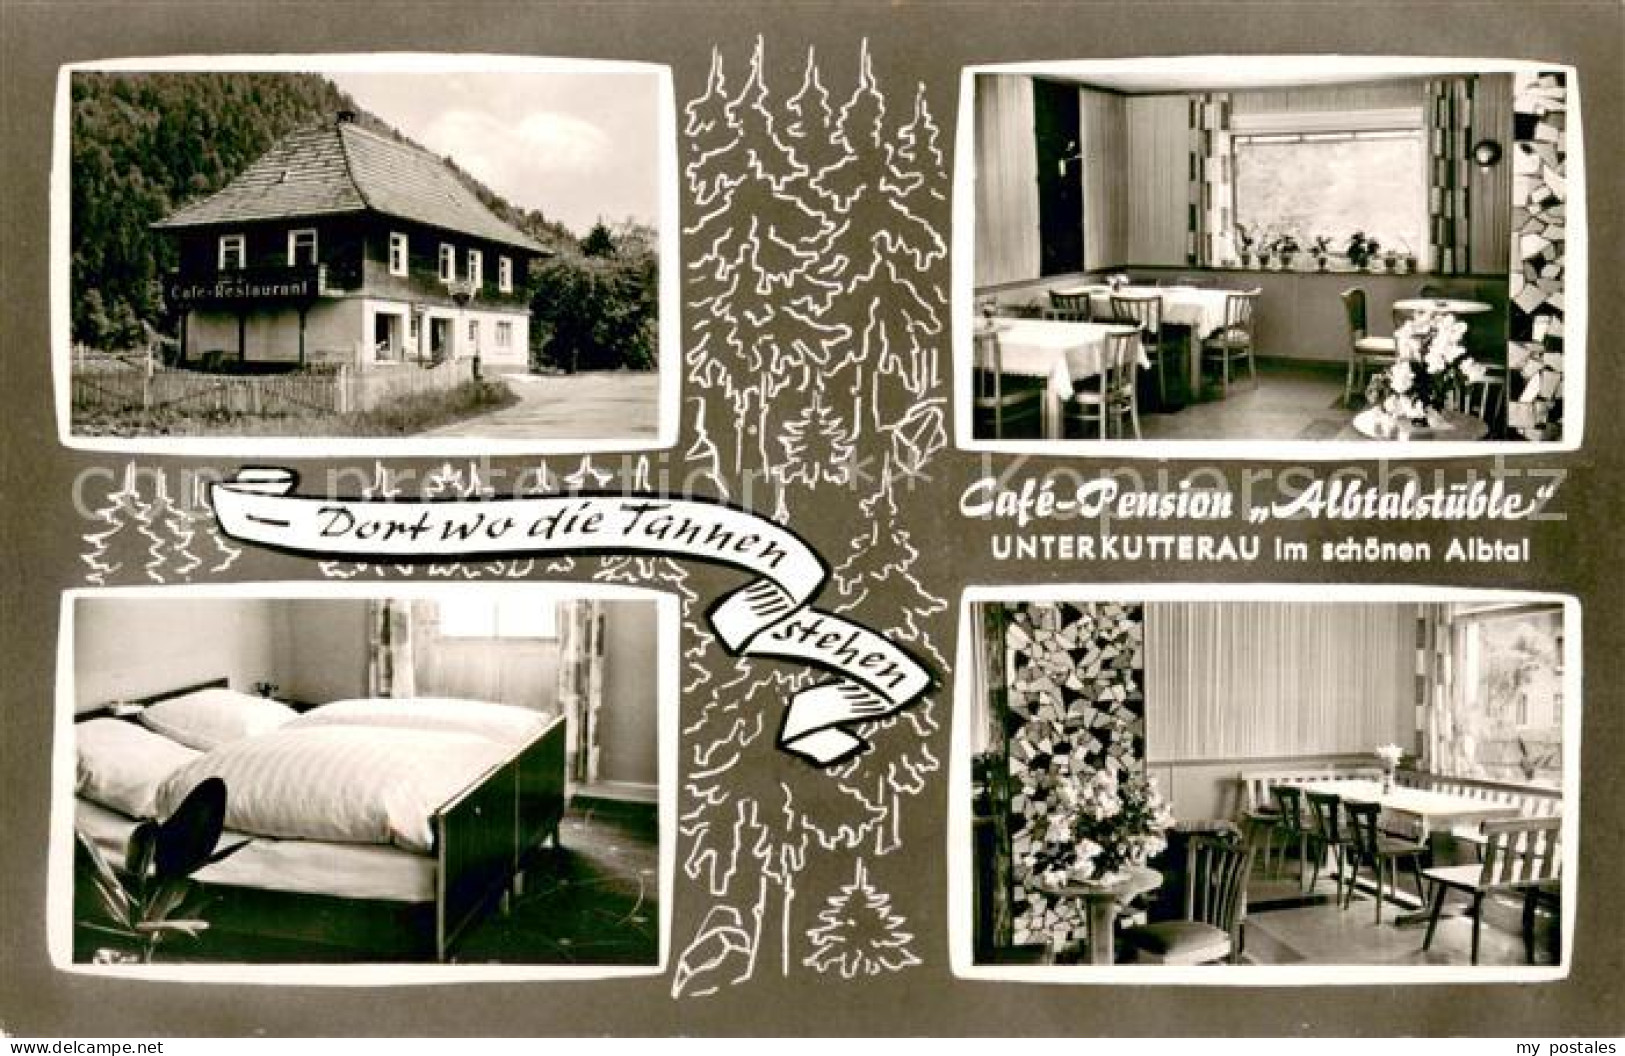 73645083 Unterkutterau Cafe Pension Albtalstueble Gaststube Zimmer Unterkutterau - St. Blasien